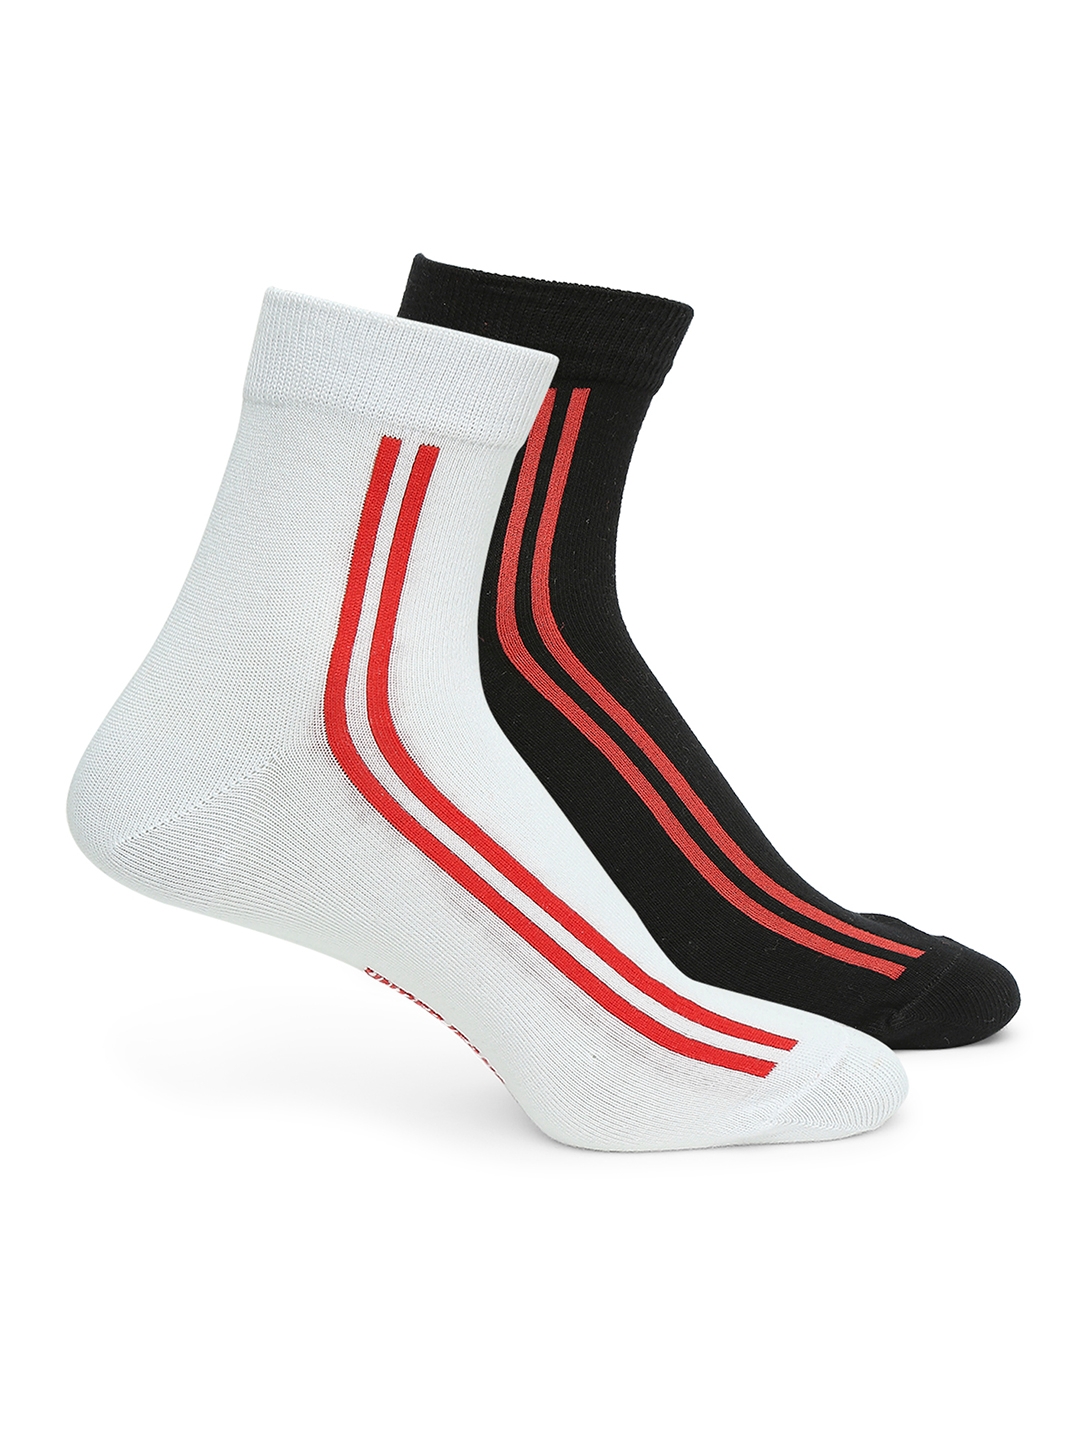 spykar | Underjeans by Spykar Premium White & Black Ankle Length Socks - Pack Of 2